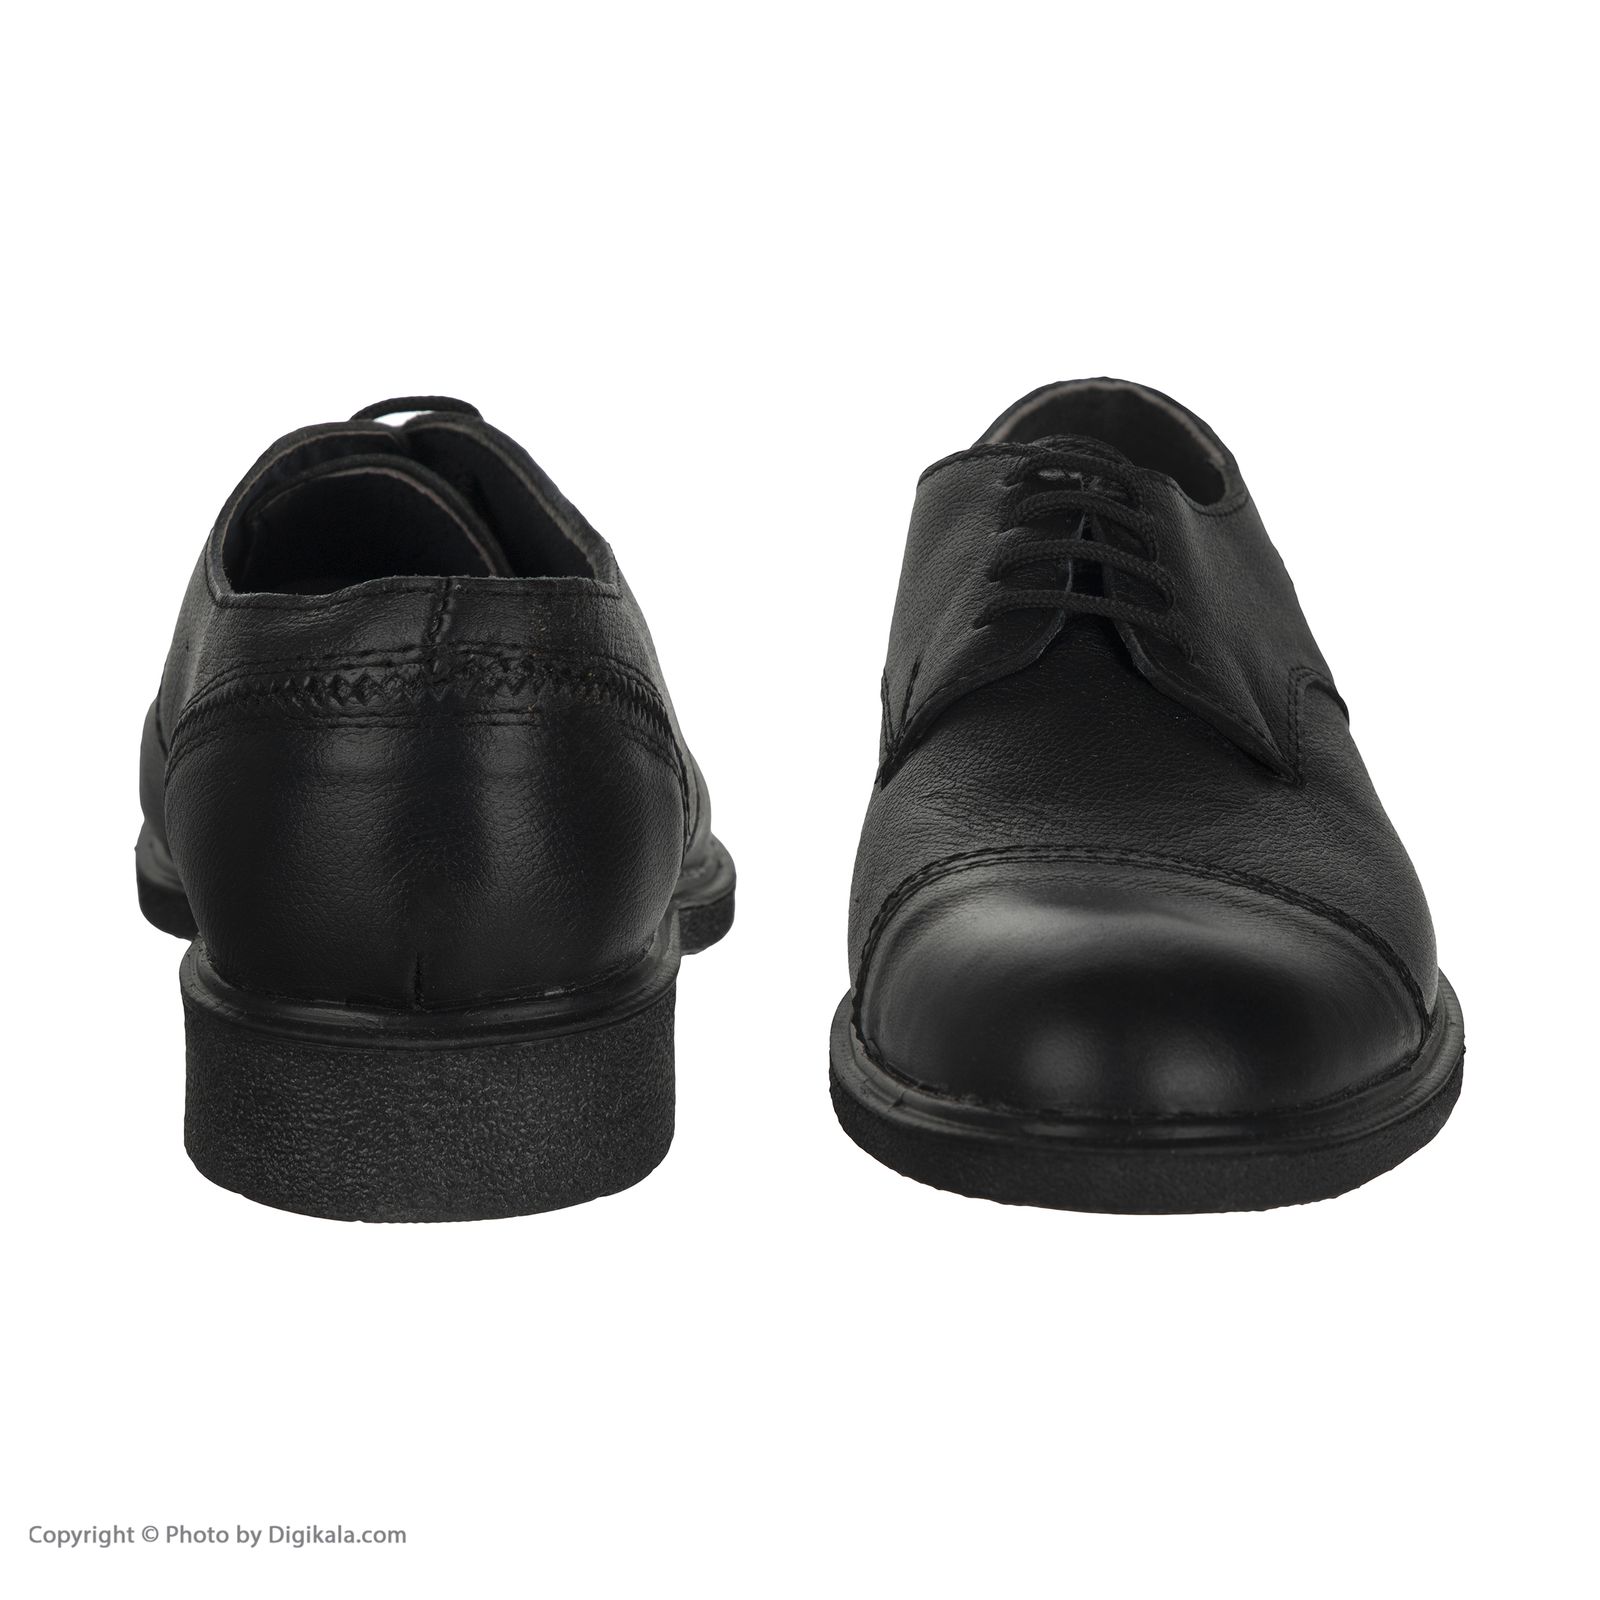  کفش مردانه سوته مدل 4870F503101 -  - 3